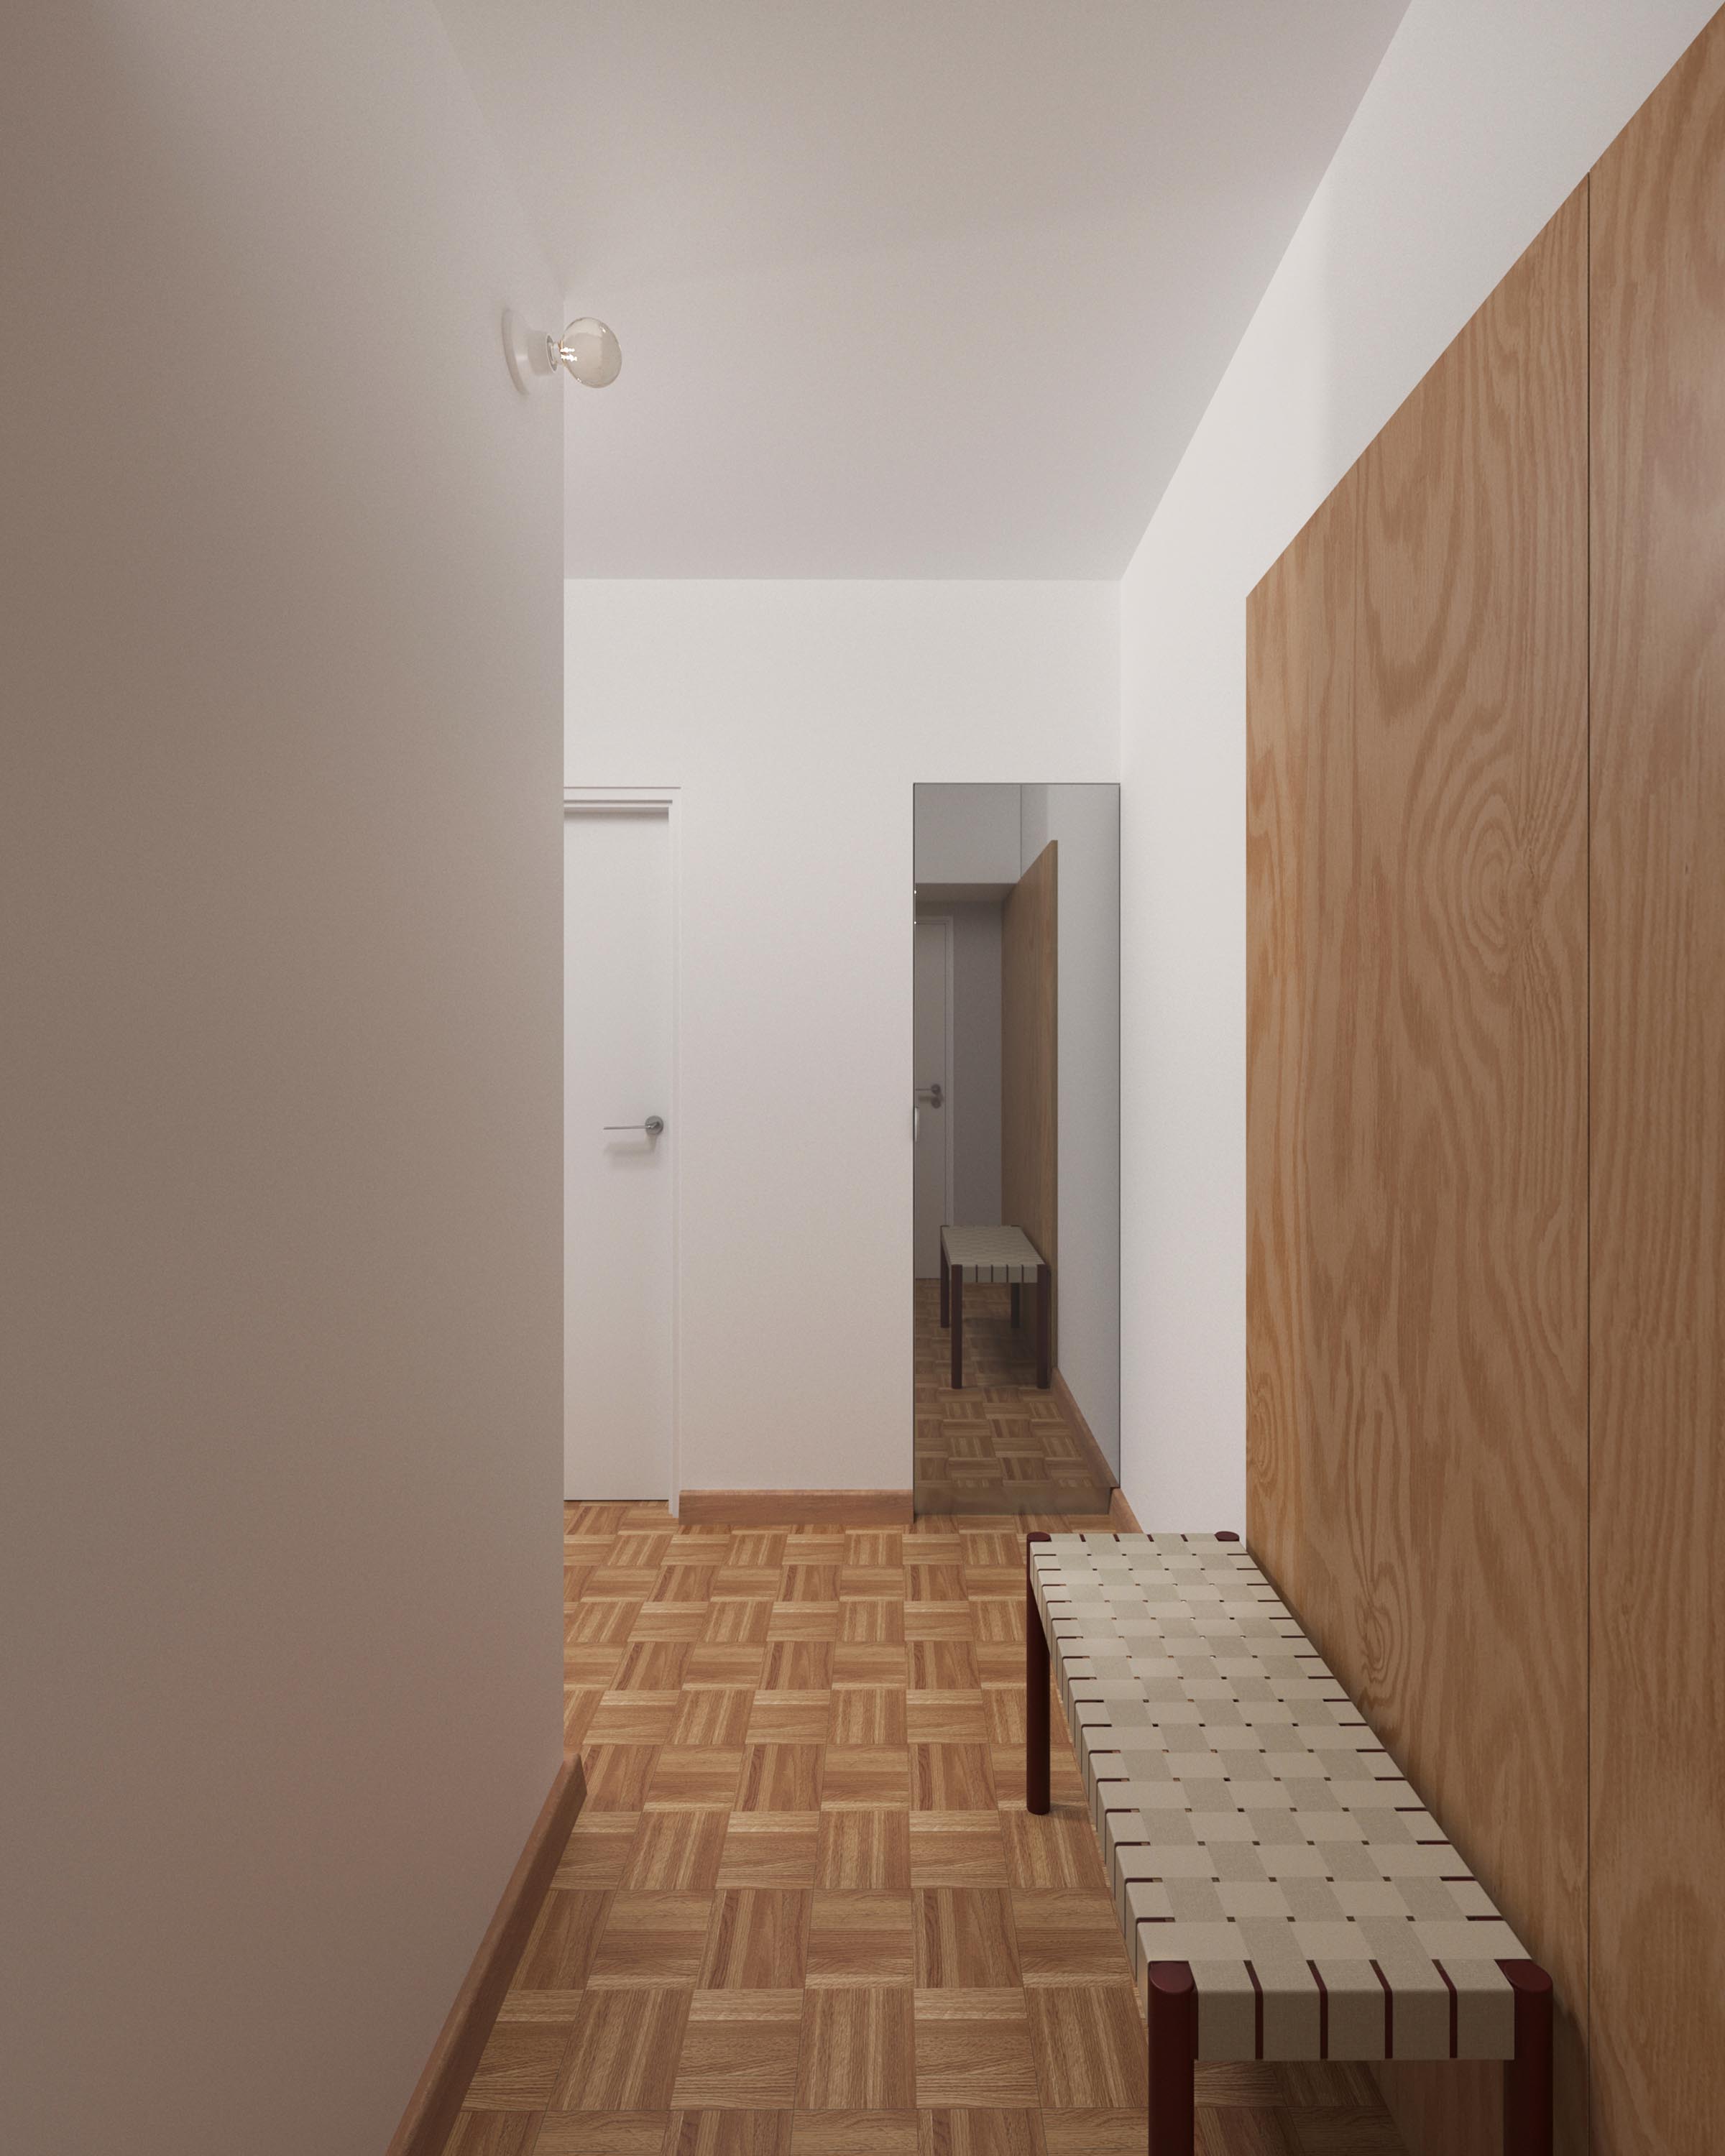 projekt realizacyjny wnętrza mieszkalnego w Warszawie